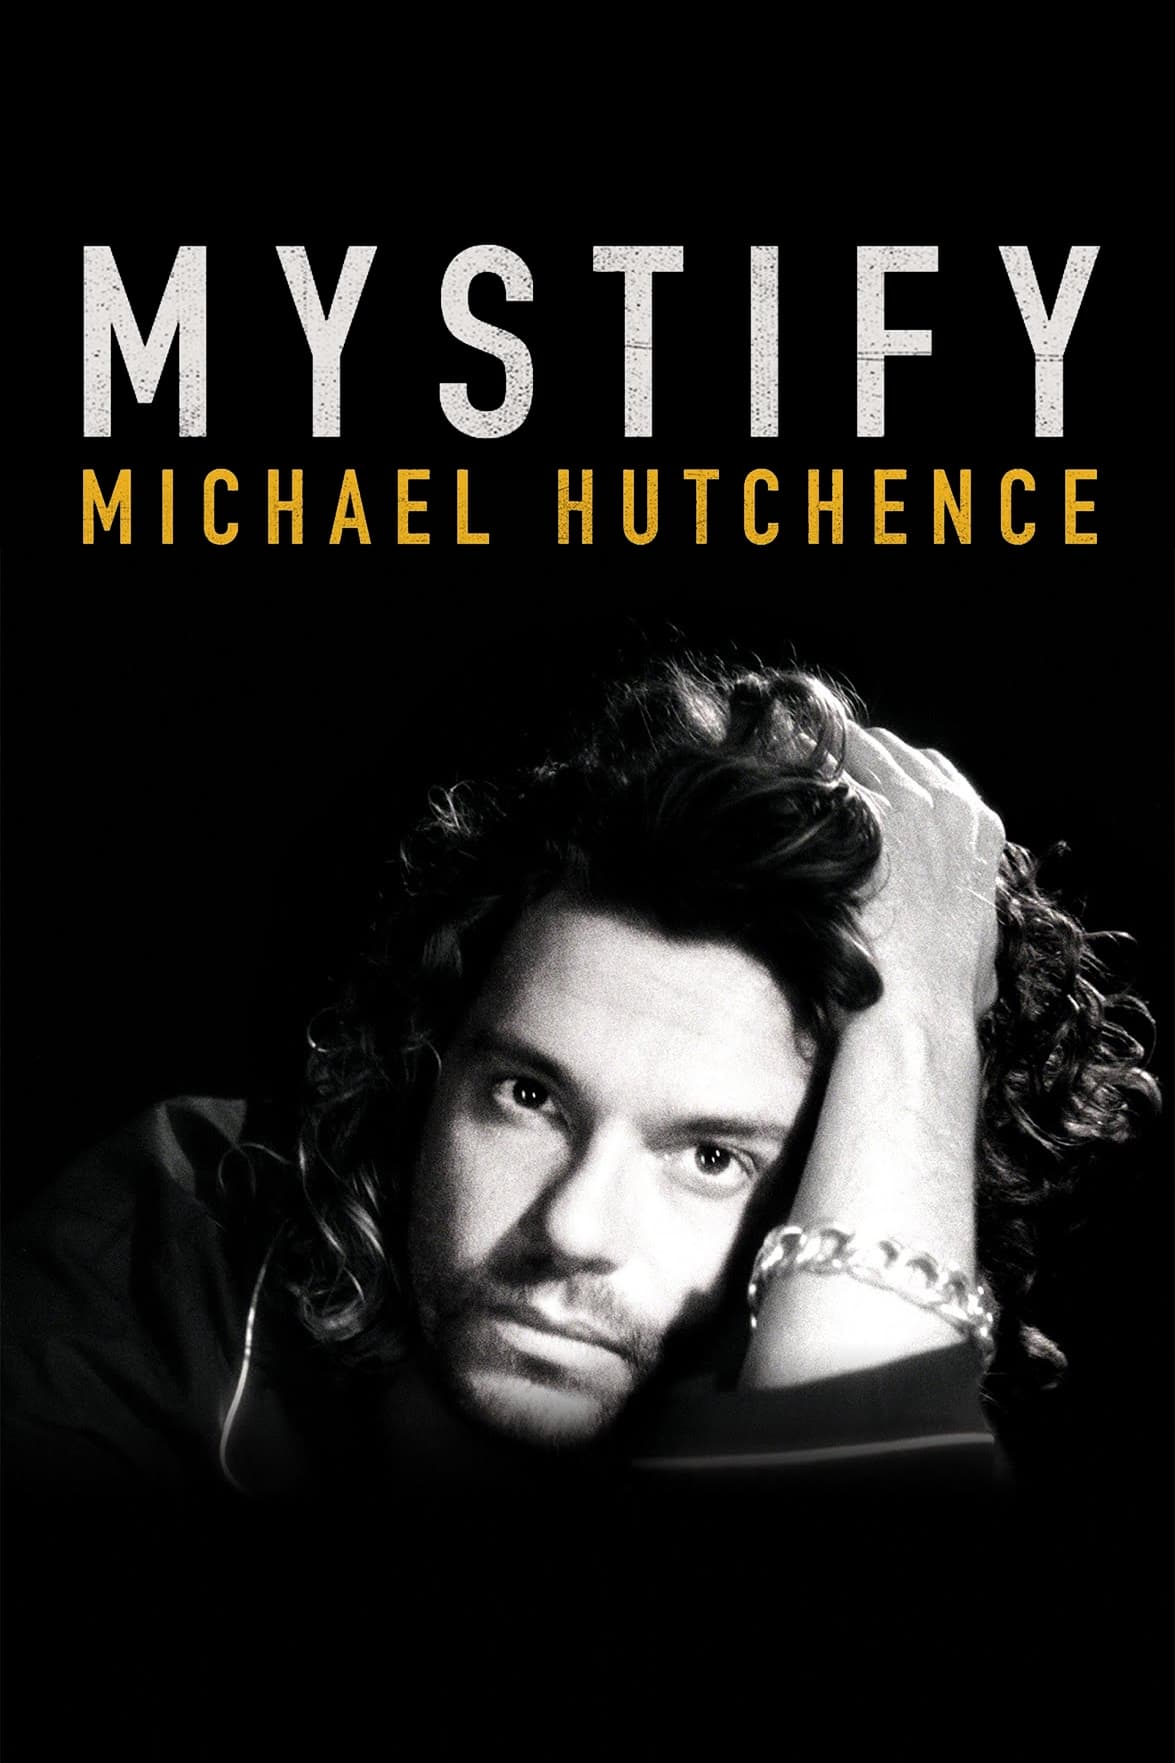 Mystify: Michael Hutchence - Mystify: Michael Hutchence (2019)